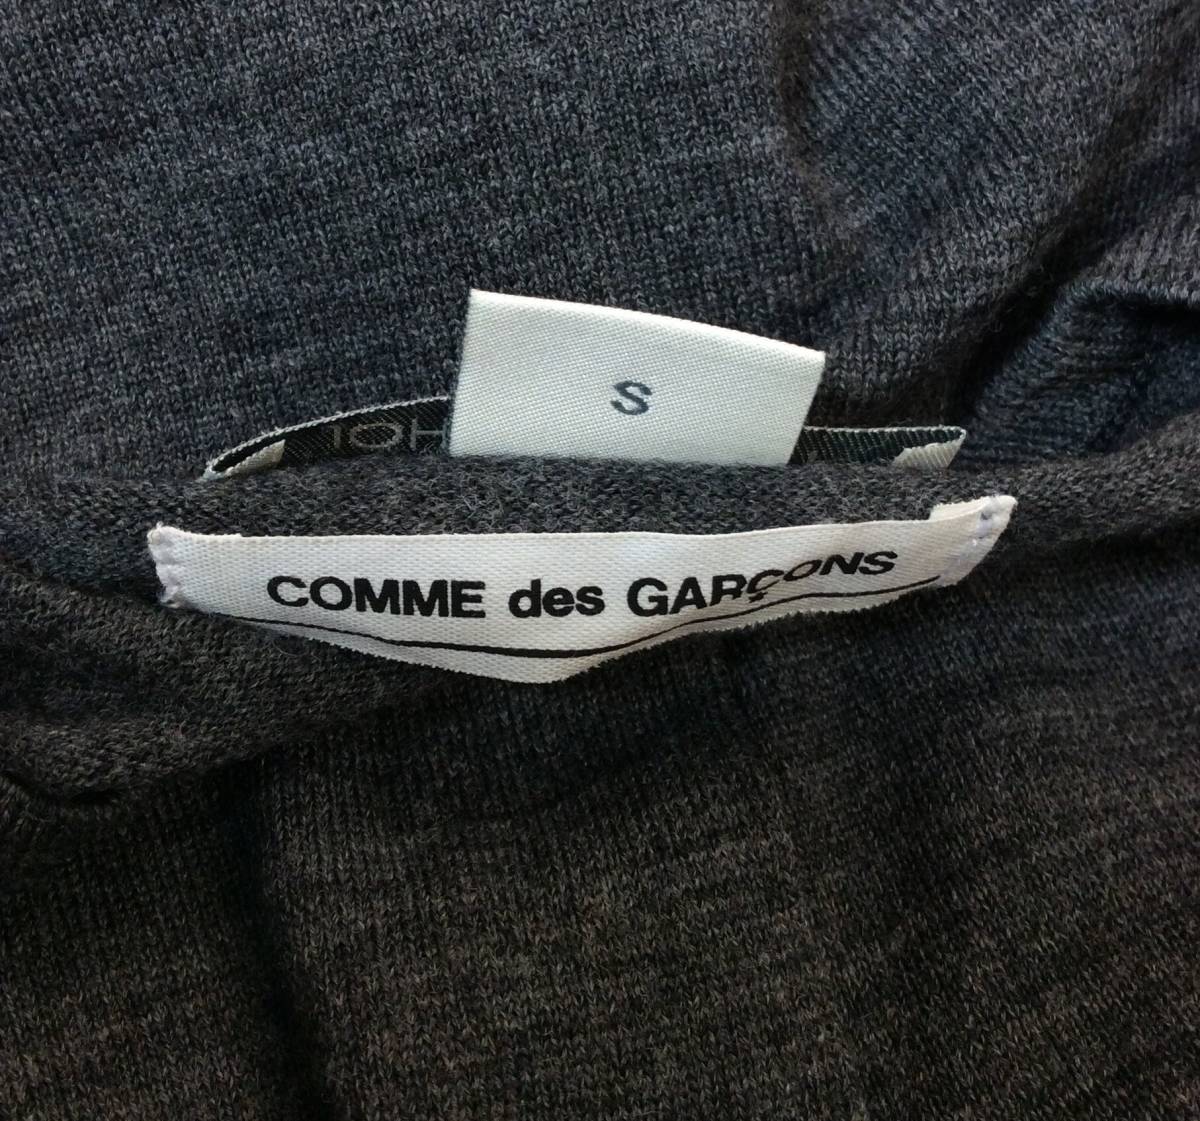 COMME des GARCONS Comme des Garcons × JOHN SMEDLEY John Smedley шерсть вязаный кардиган свитер серый S стоимость доставки 250 иен (ma)